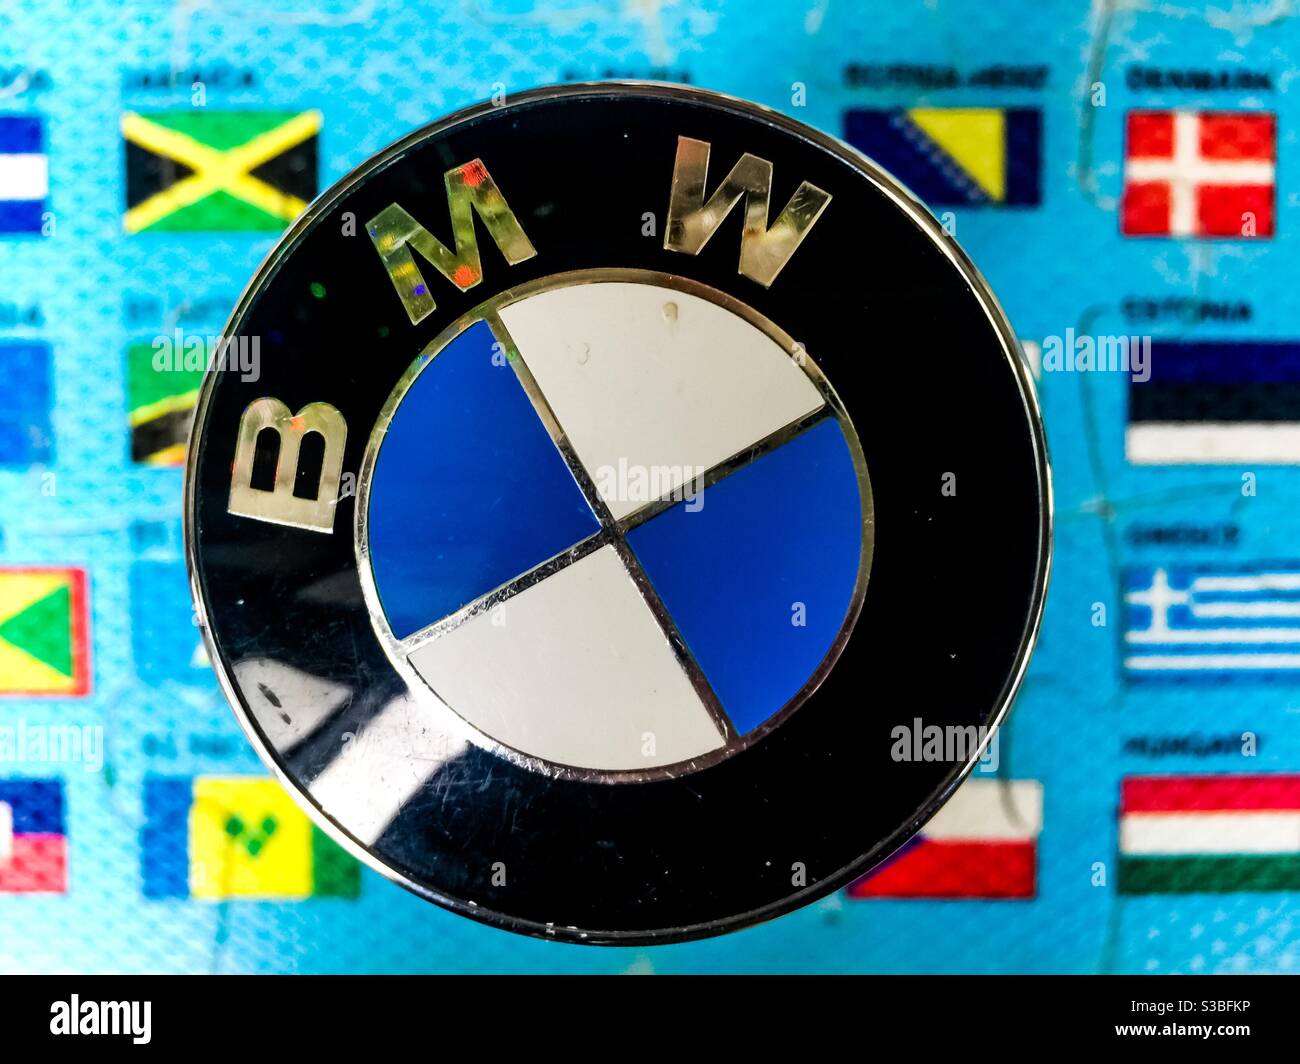 BMW sticht in der Welt des Motorsports hervor, symbolisiert durch sein Logo vor dem Hintergrund von Länderflaggen. Konzeptuelles Image. Kultig. Symbolisch. Stockfoto